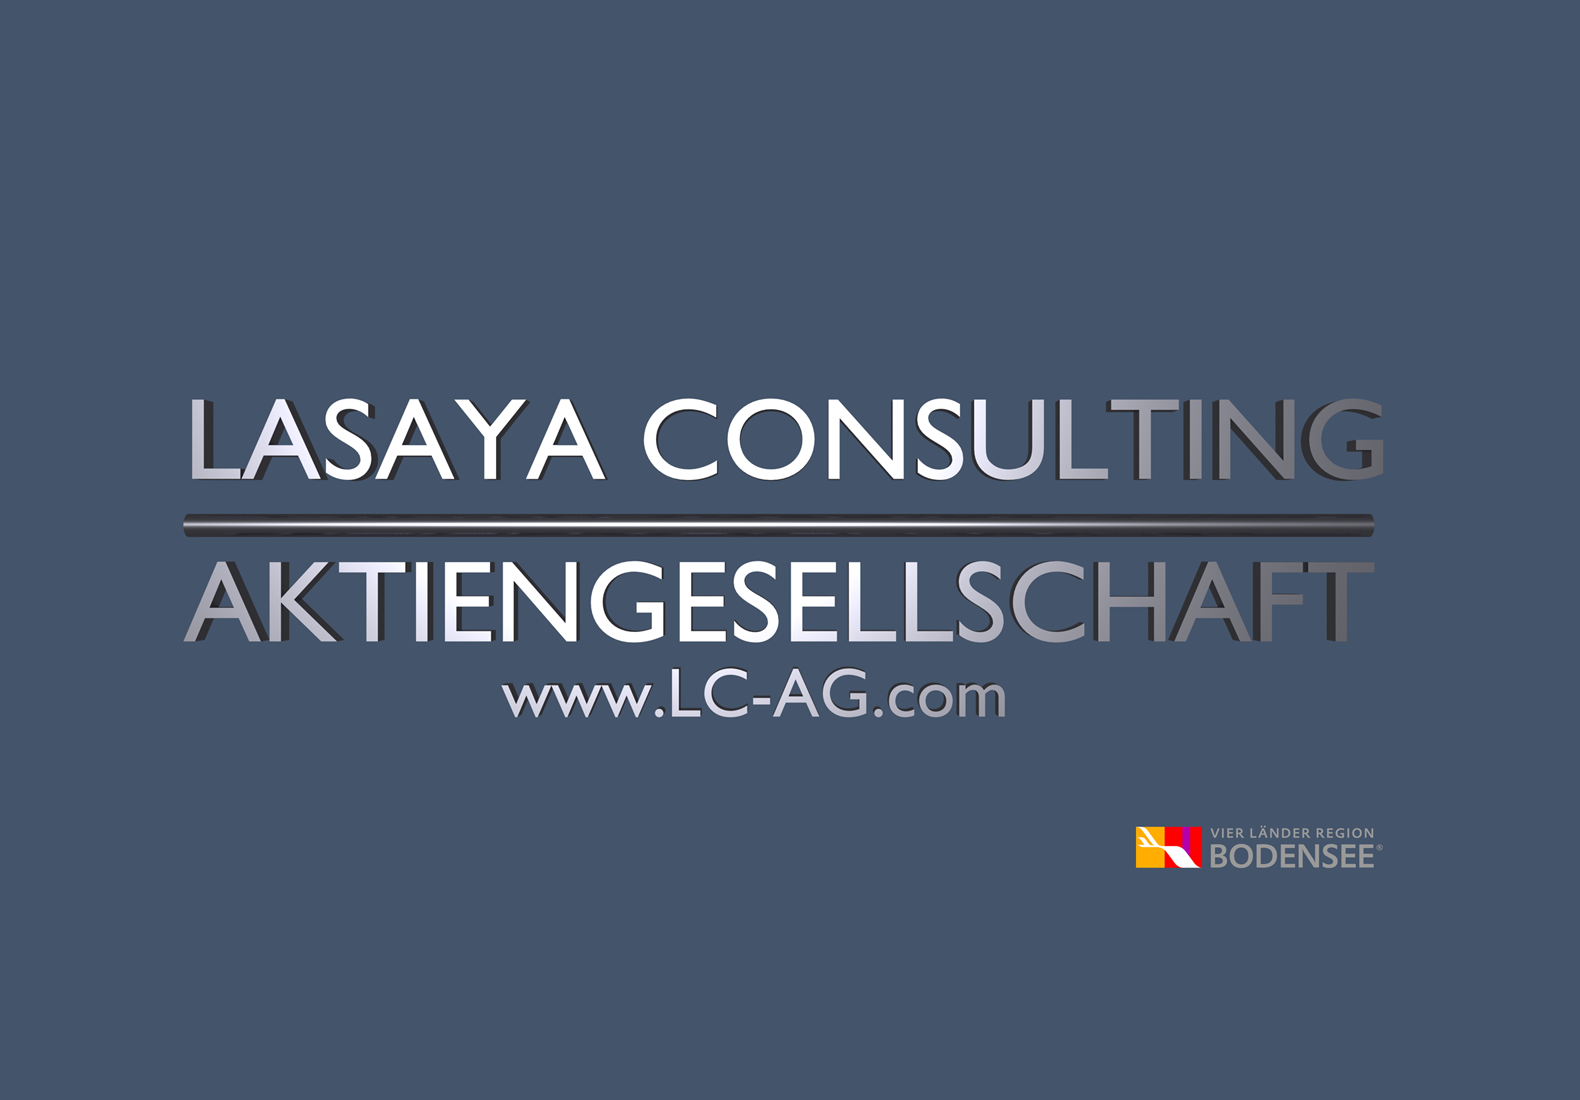 Logo und Internetadresse der LC AG.